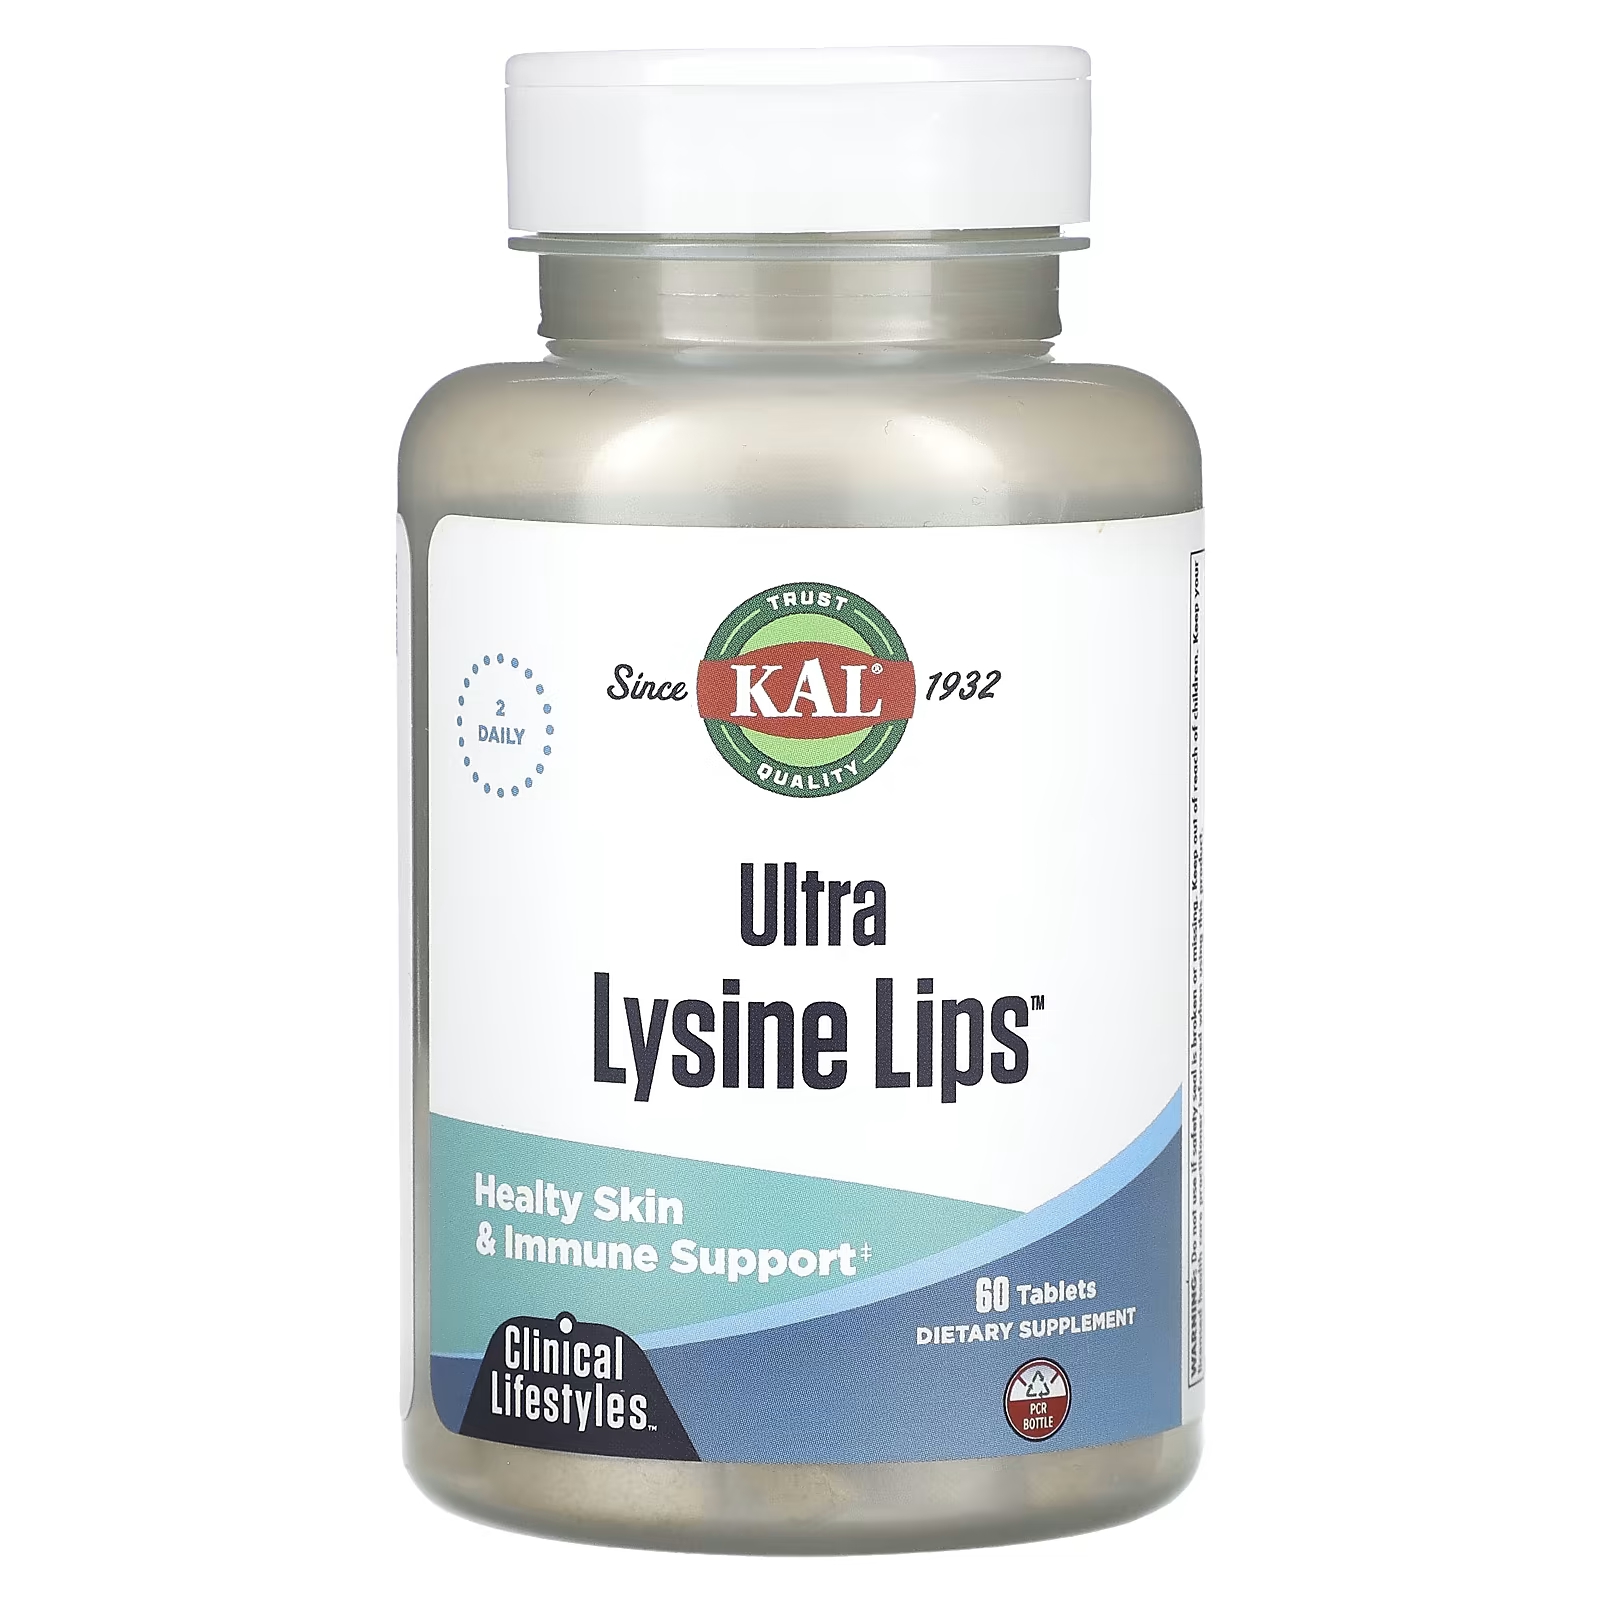 Пищевая добавка Kal Ultra Lysine Lips, 60 таблеток